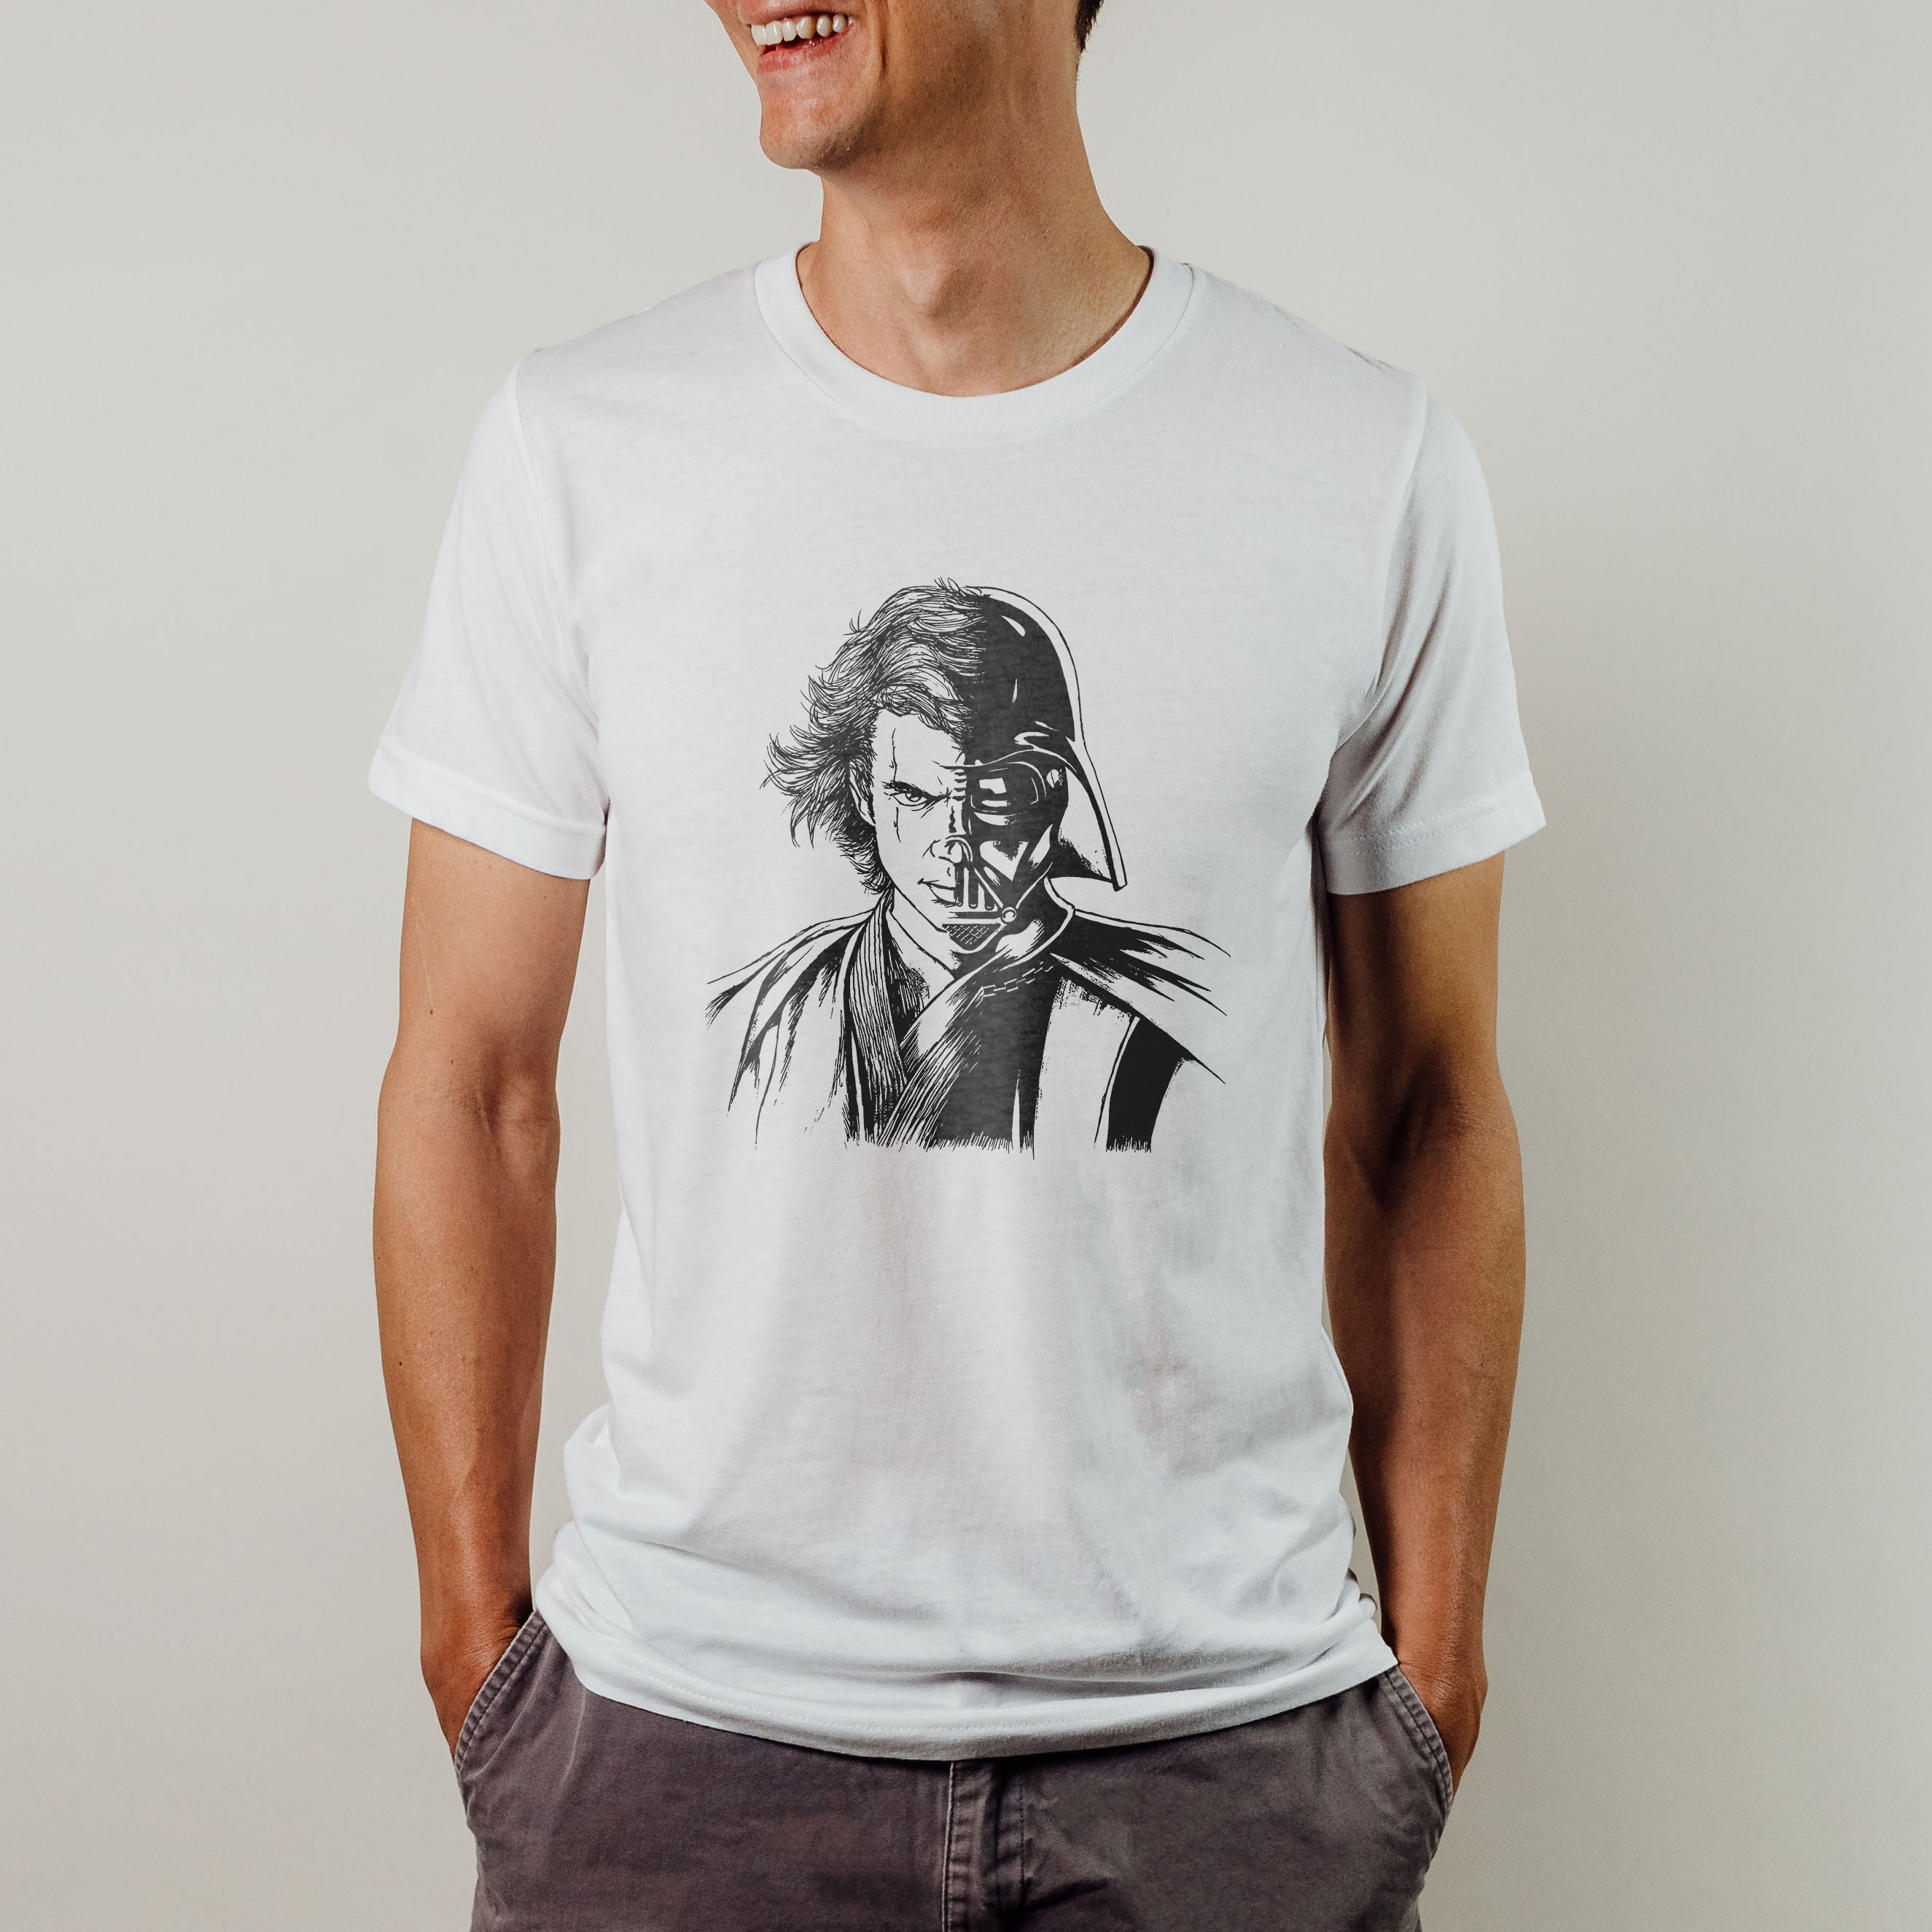 Discover Anakin Skywalker Shirt